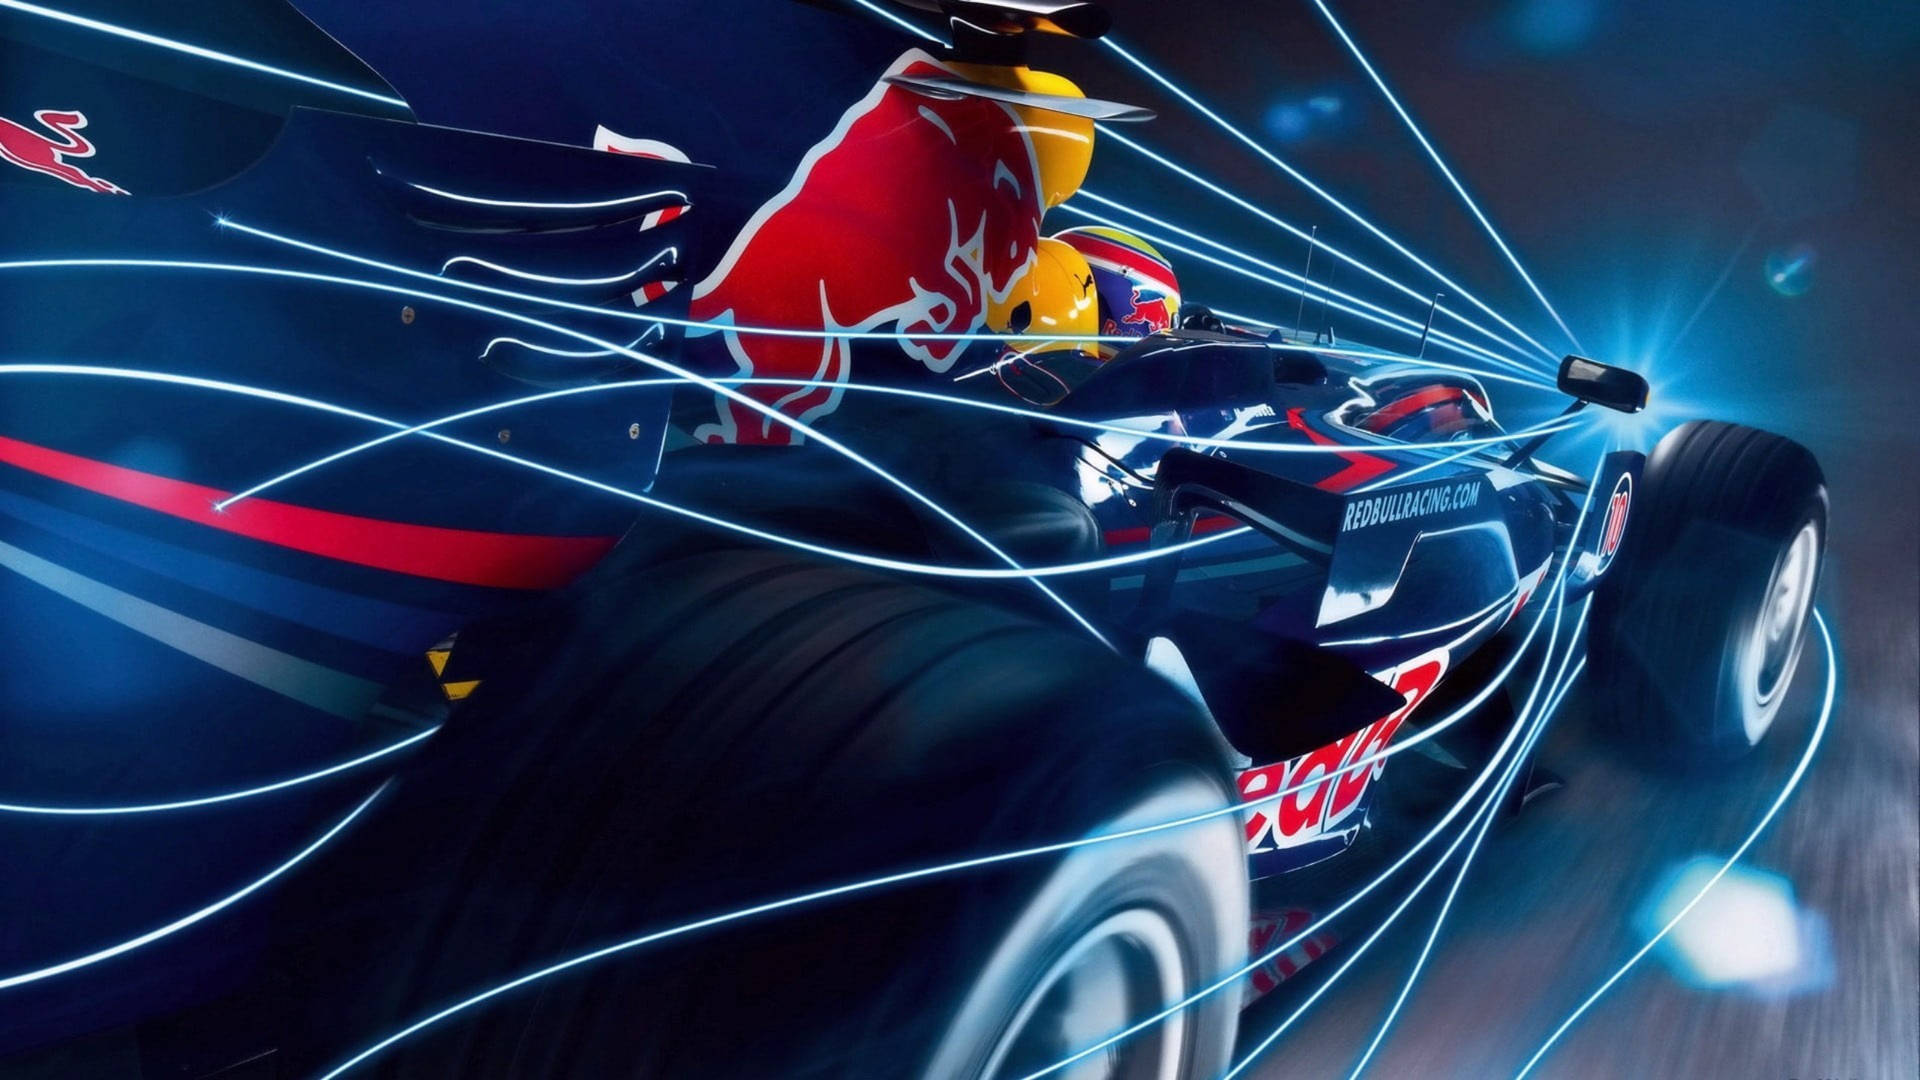 F1 Racing Car In Digital